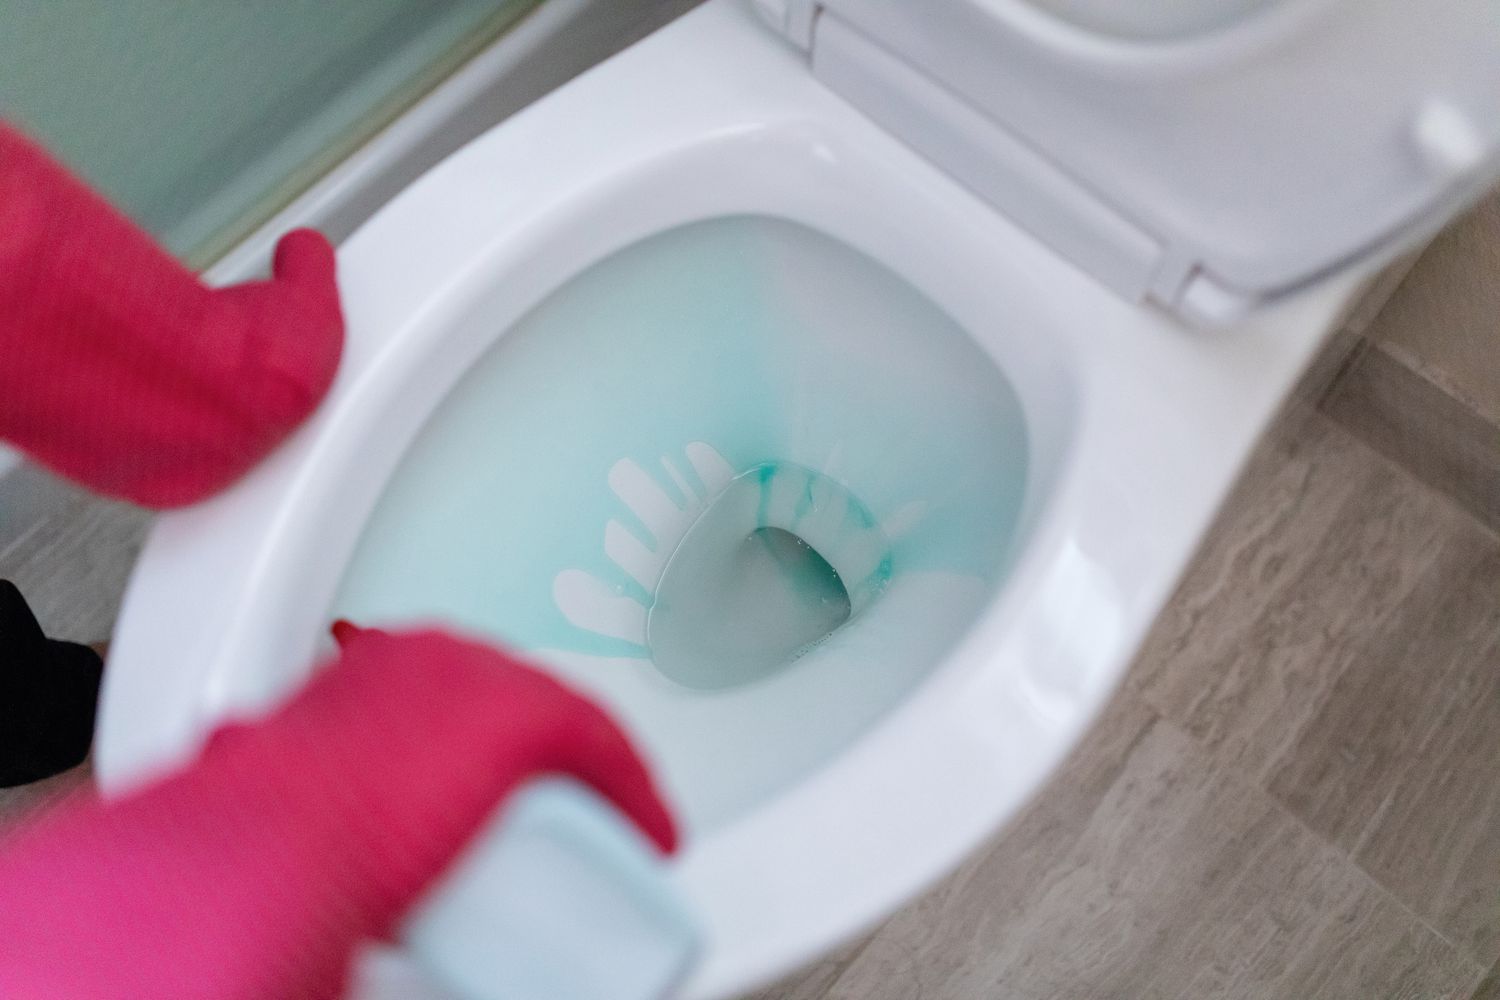 Ajouter une solution de nettoyage à la cuvette des toilettes avant de tirer la chasse